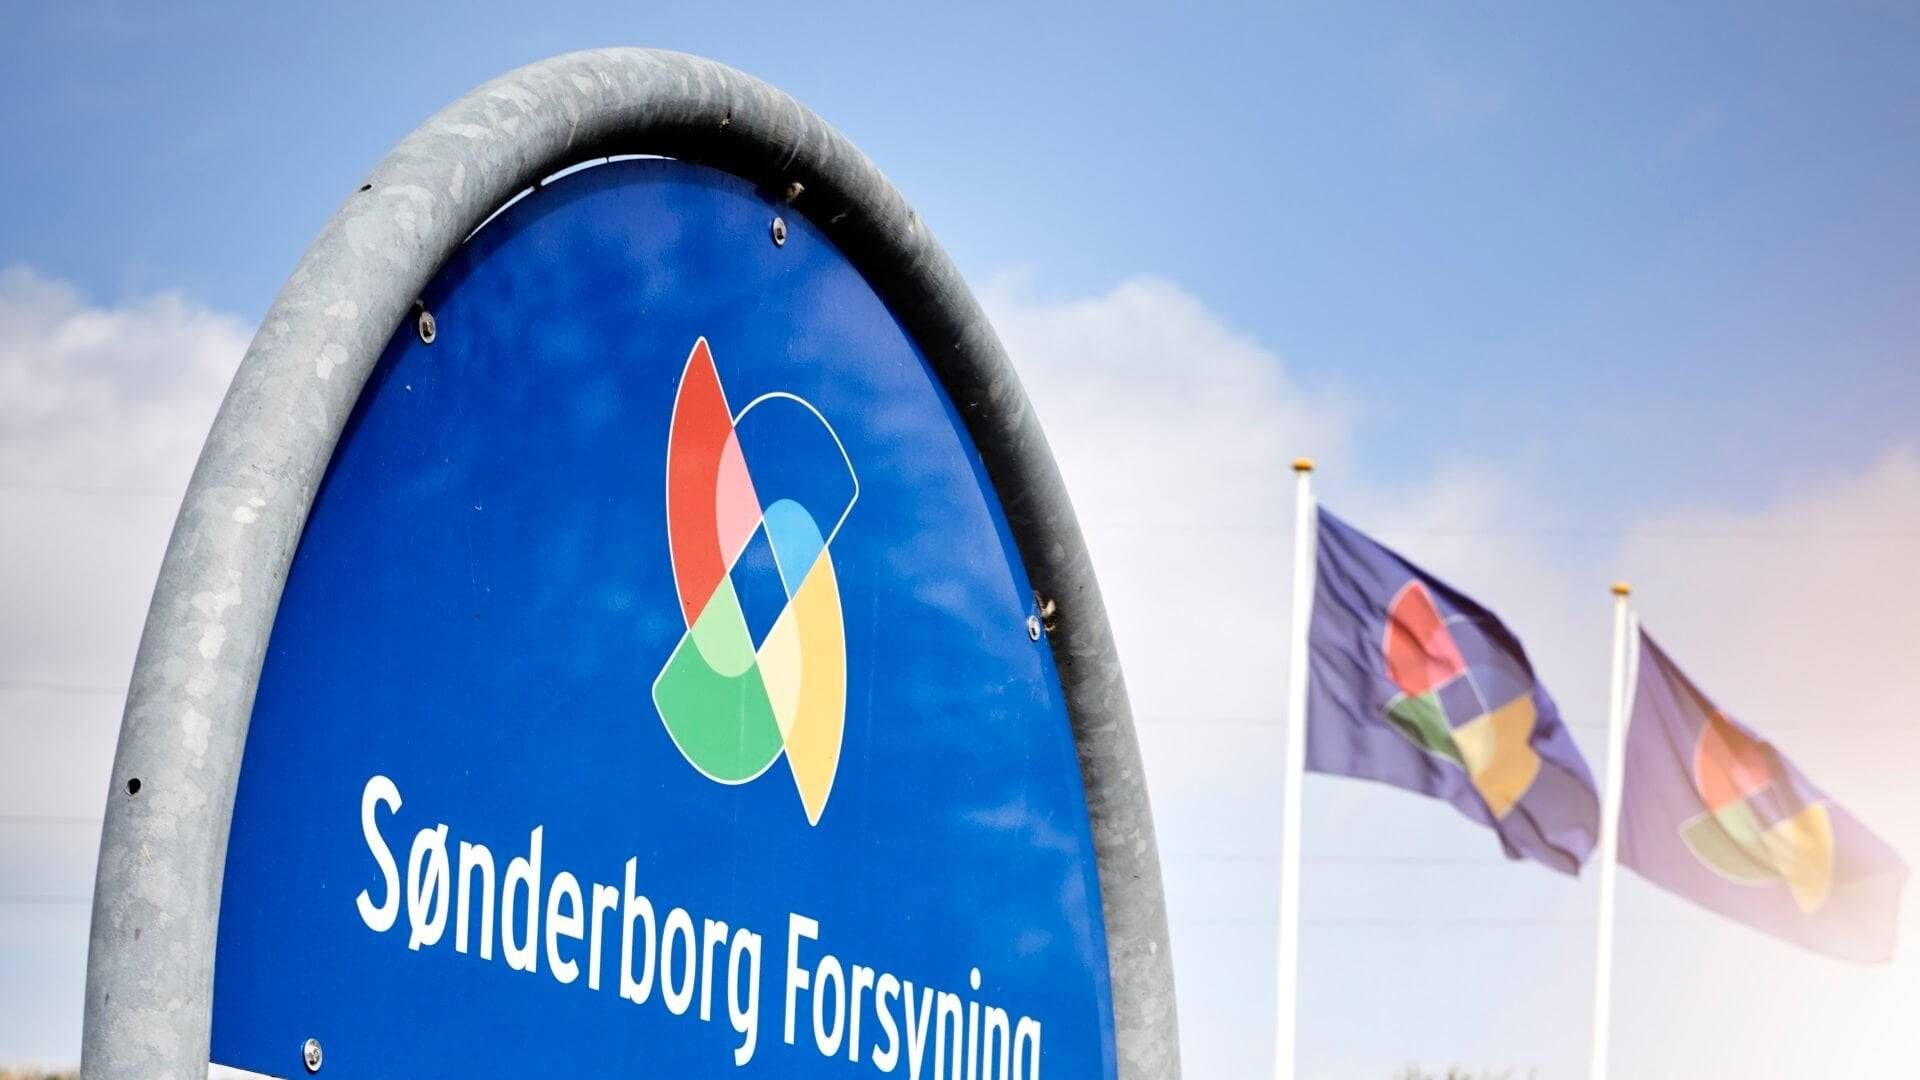 Foto: Sønderborg Forsyning/PR